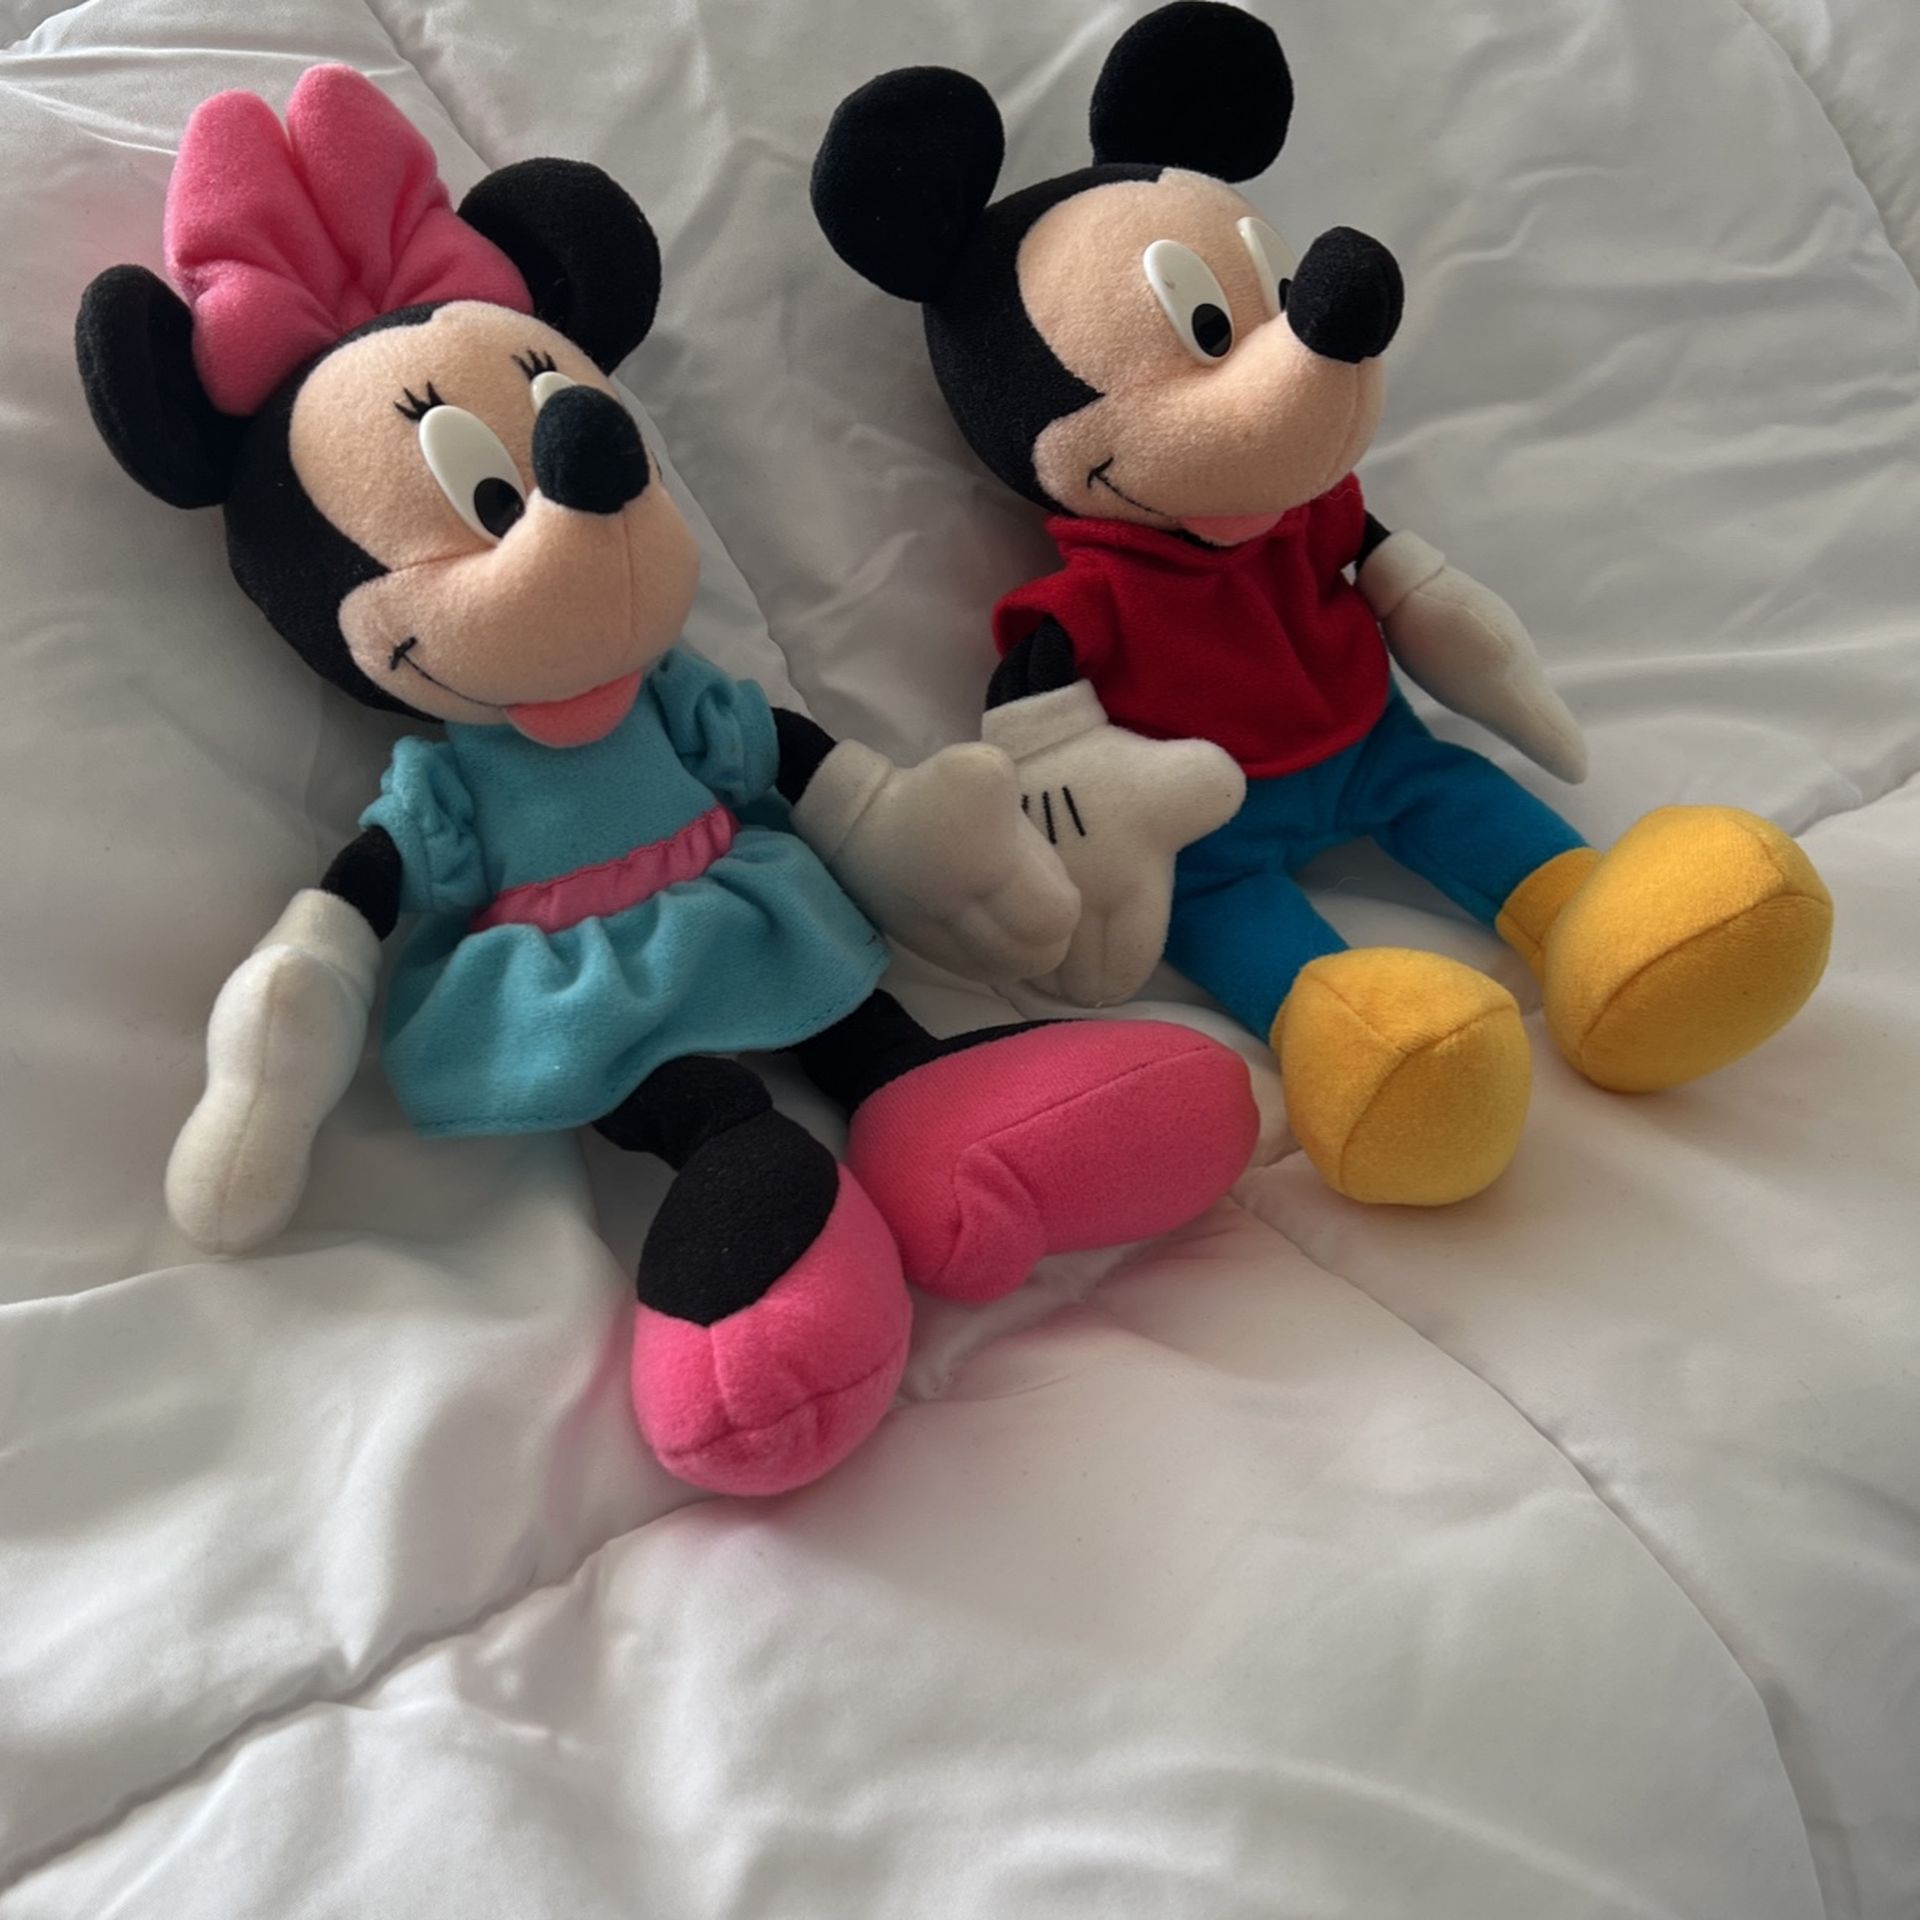 Mickey And Minnie Vintage Beanie Toys